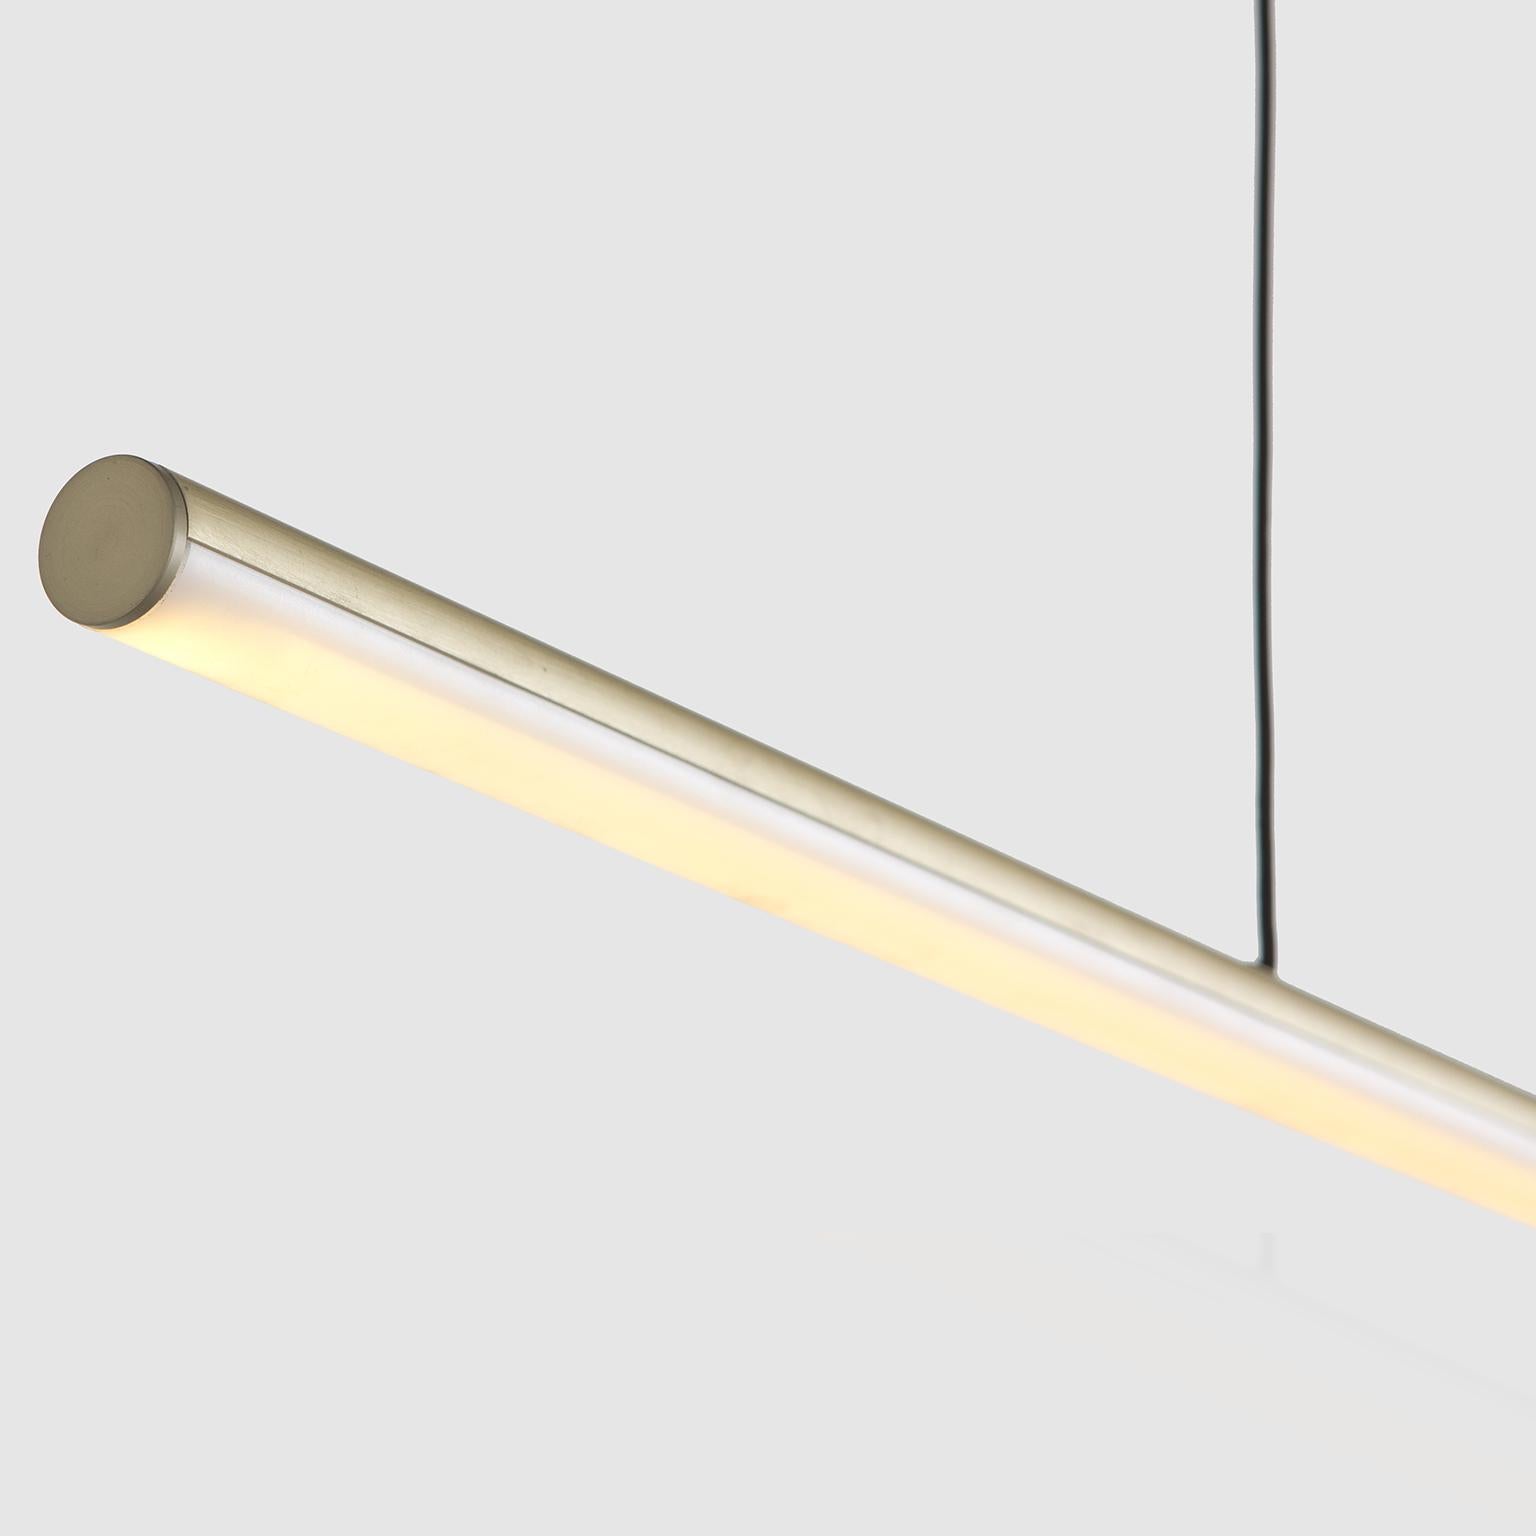 Formation Stick Pendant est un luminaire élégant et minimaliste en aluminium extrudé, idéal pour être suspendu au-dessus des îlots de cuisine, des espaces de travail et d'autres environnements qui nécessitent un éclairage fonctionnel mais